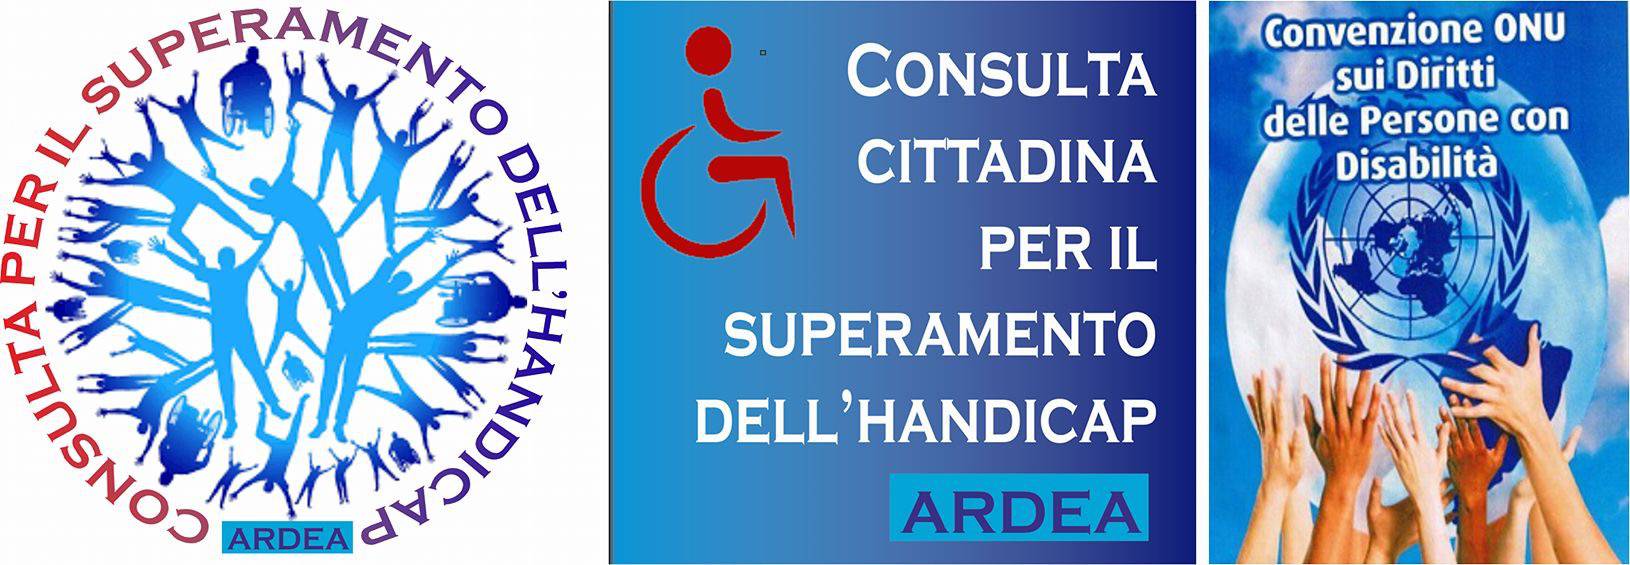 Ardea, la Consulta Cittadina chiede al Comune di partecipare ai tavoli di lavoro